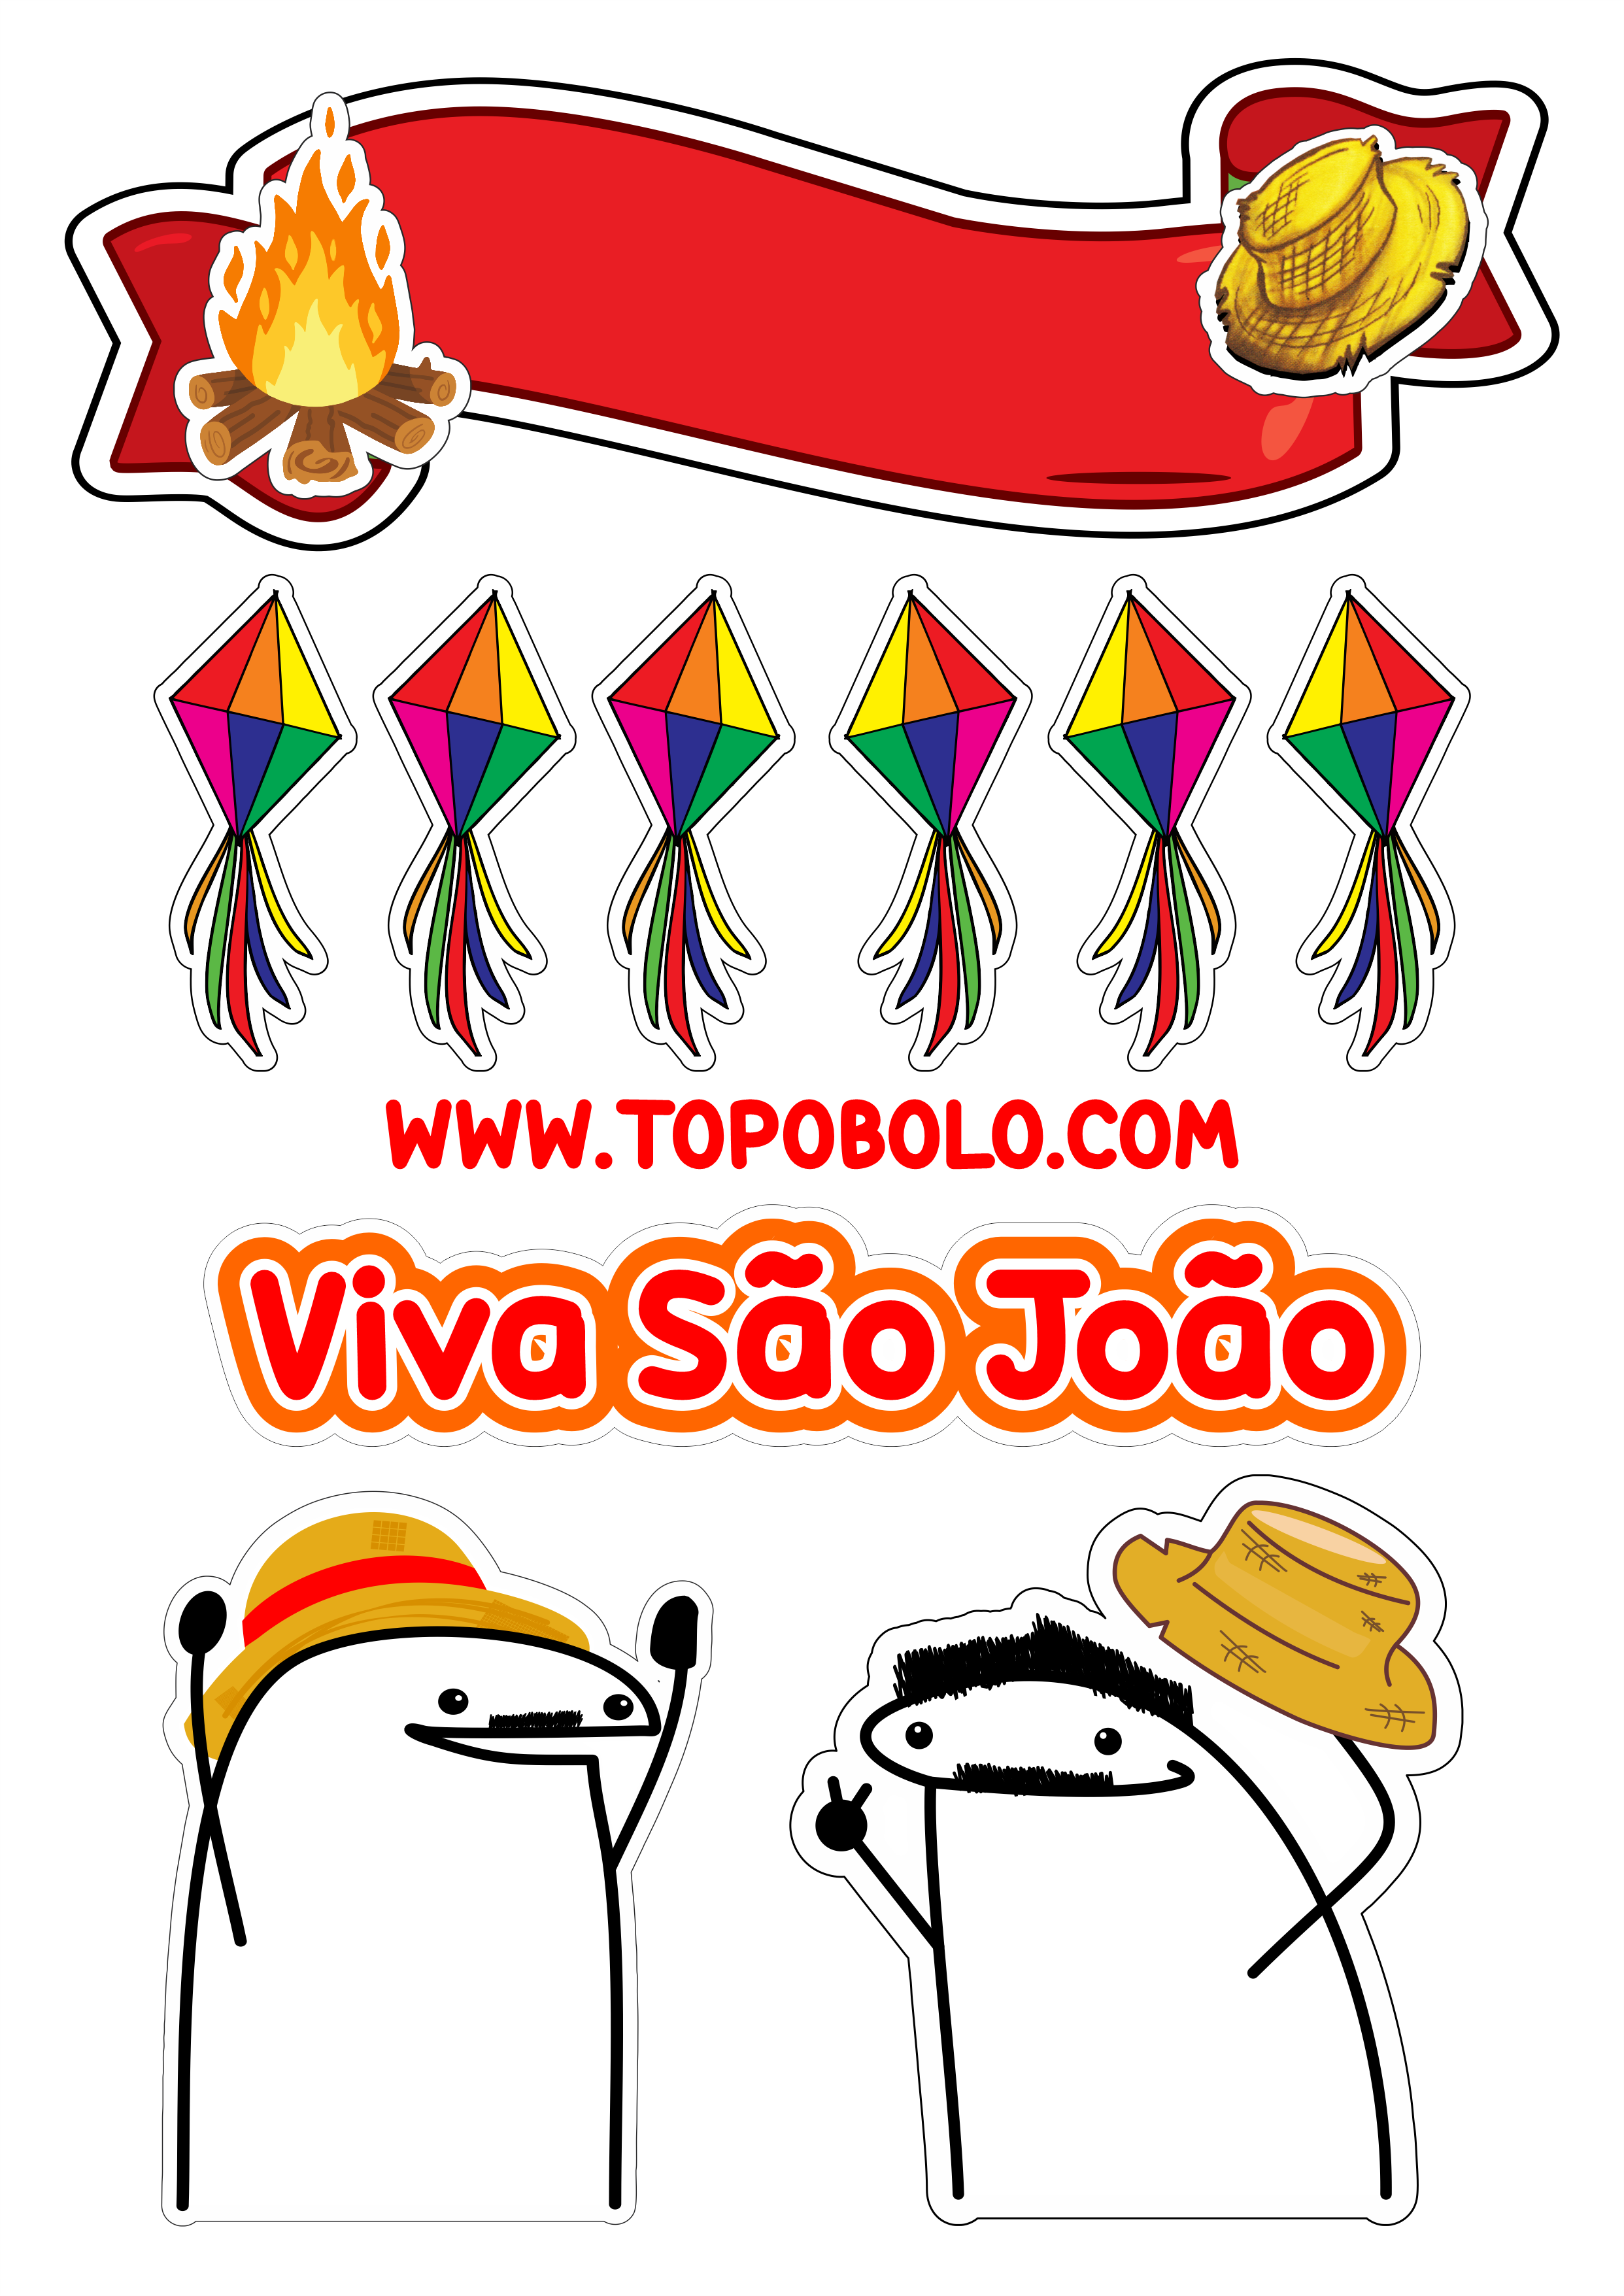 Topo de bolo para imprimir flork festa junina viva São João quadrilha caipira balões decoração de festa png